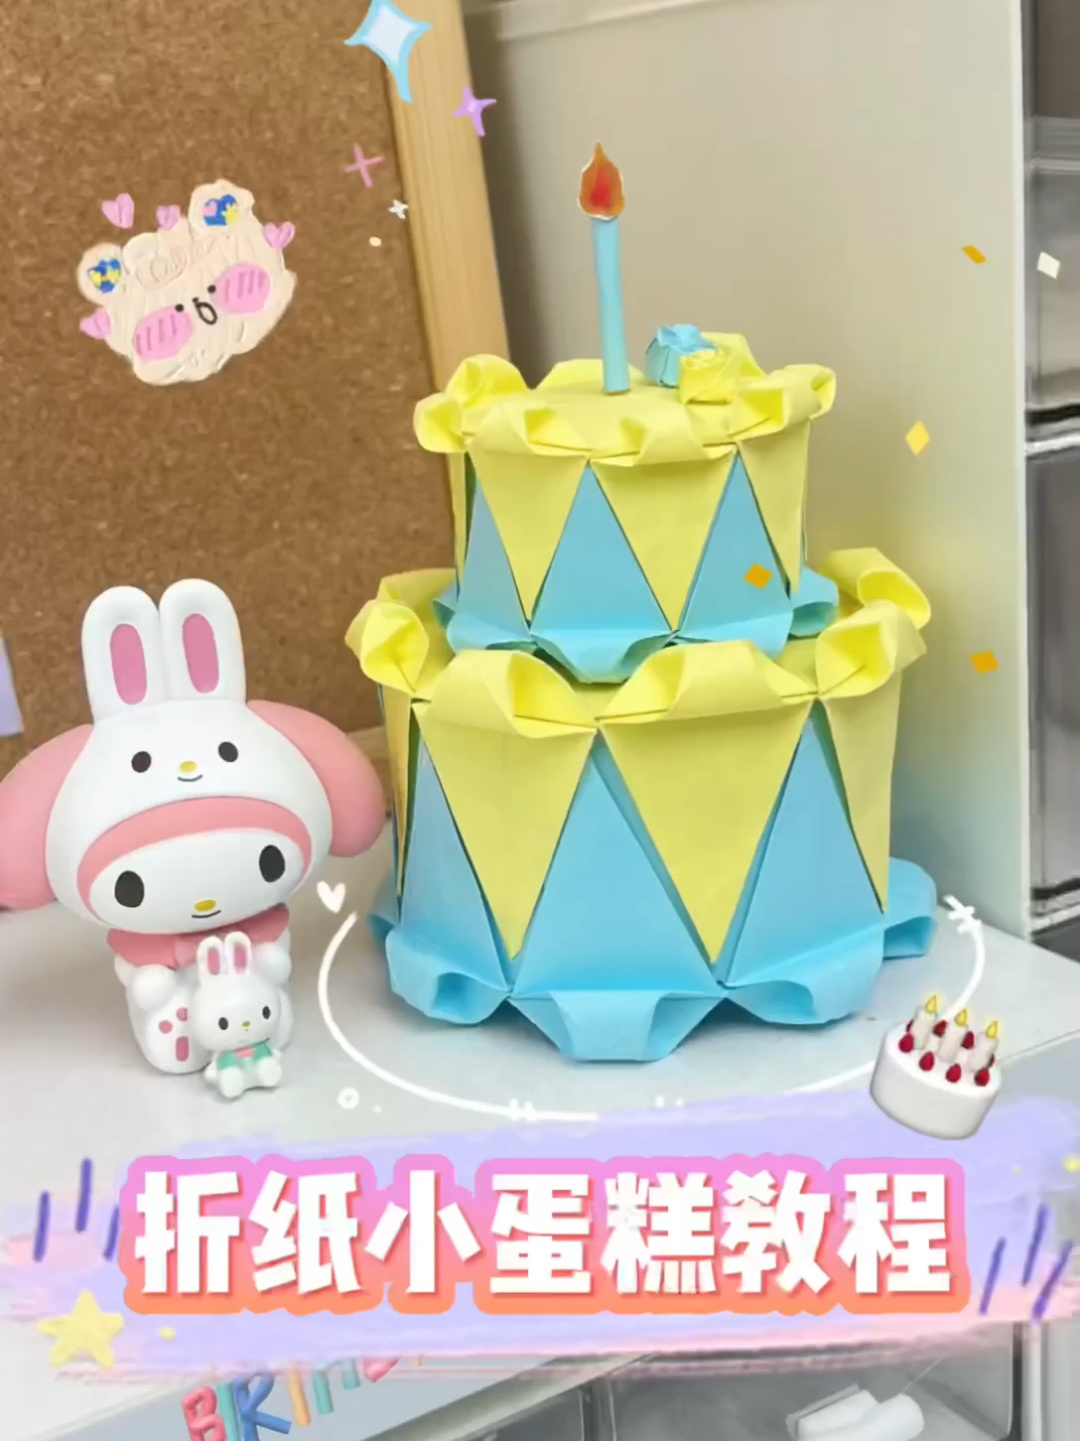 【折纸教程】折纸蛋糕/Origami Cake_哔哩哔哩_bilibili